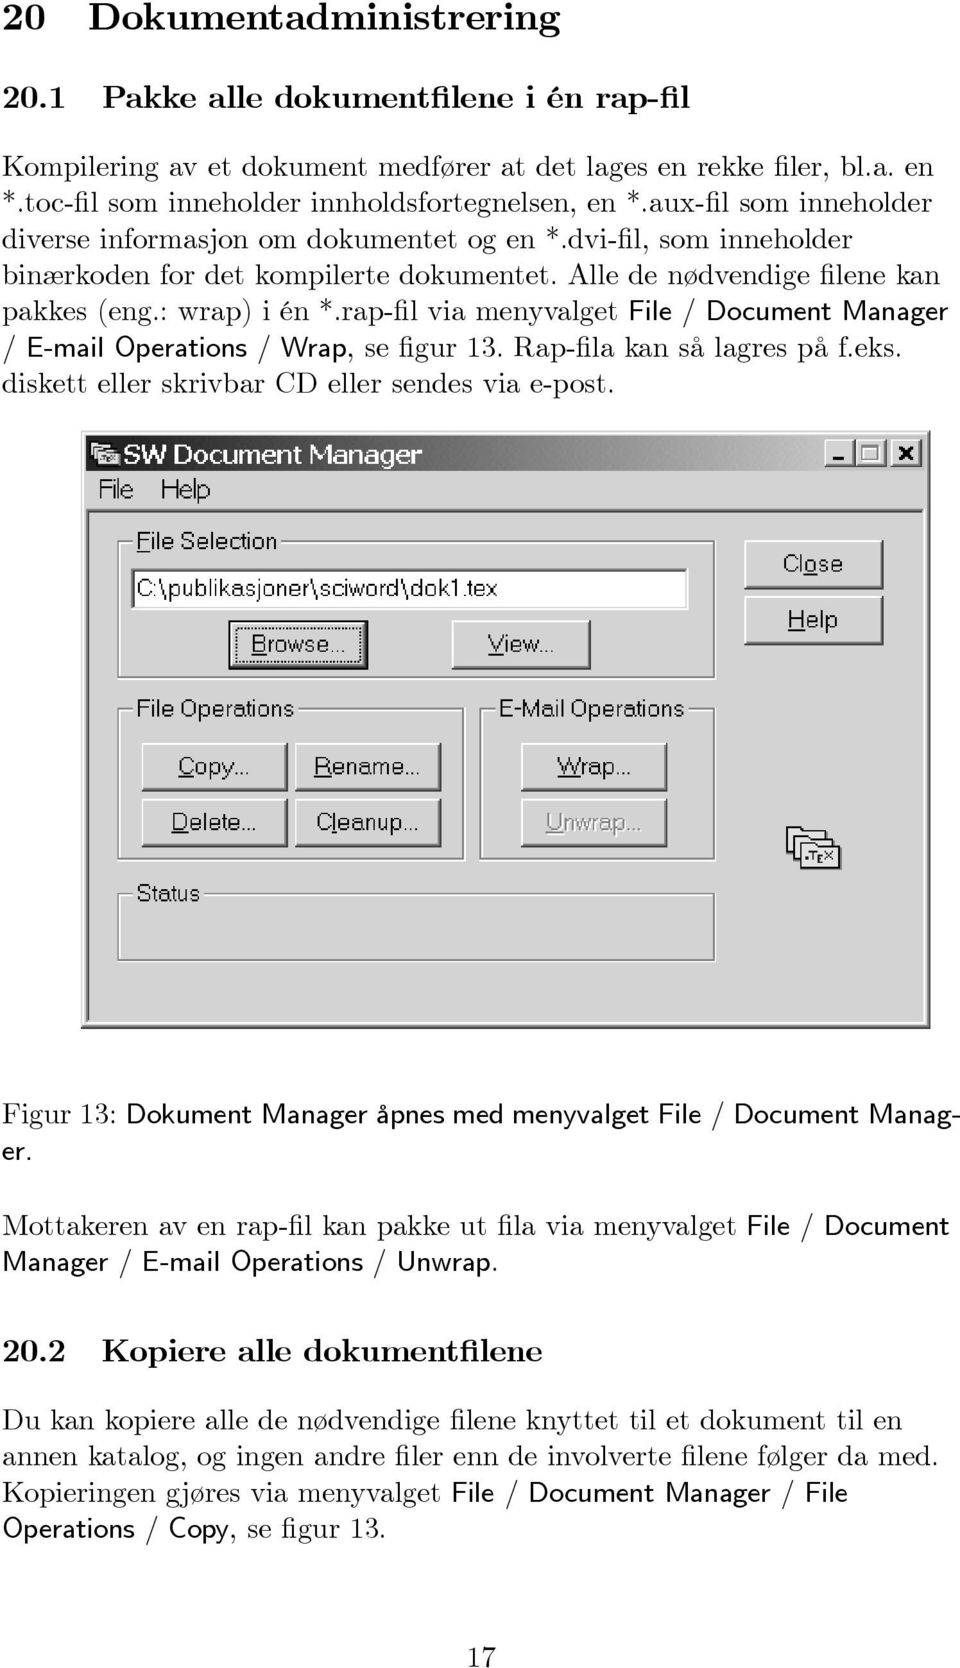 rap-fil via menyvalget File / Document Manager / E-mail Operations / Wrap, sefigur 13. Rap-fila kan så lagres på f.eks. diskett eller skrivbar CD eller sendes via e-post.